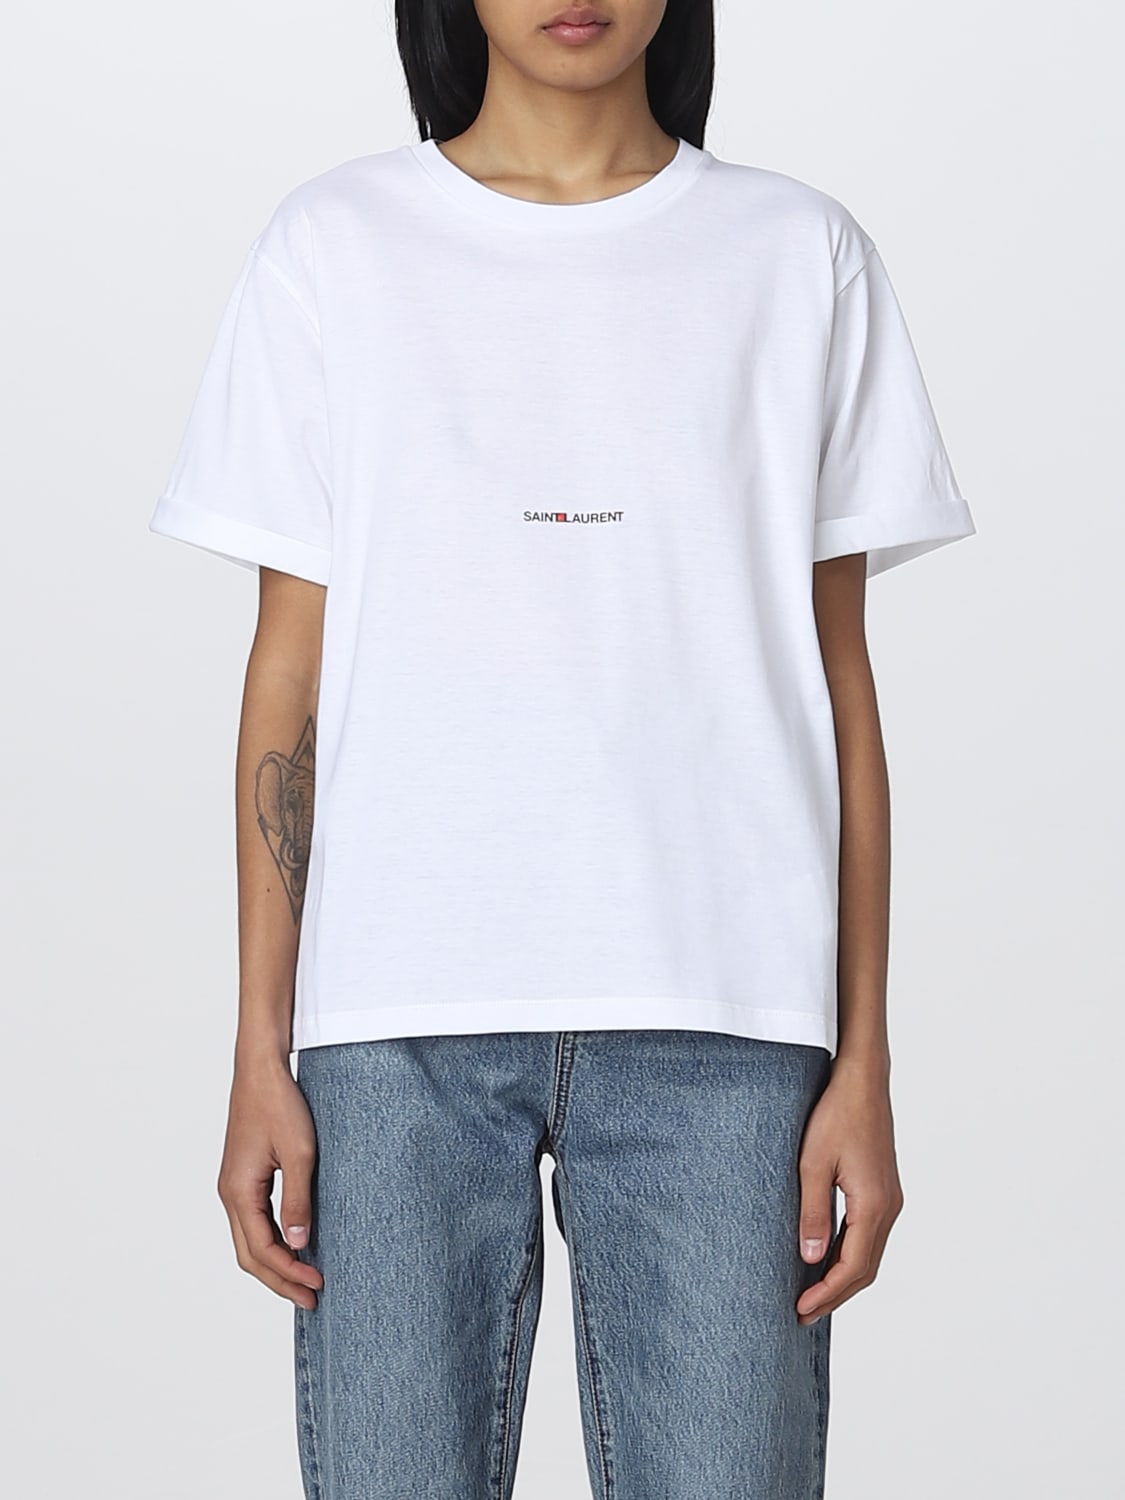 SAINT LAURENT: cotton t-shirt - White | Saint Laurent t-shirt online on GIGLIO.COM